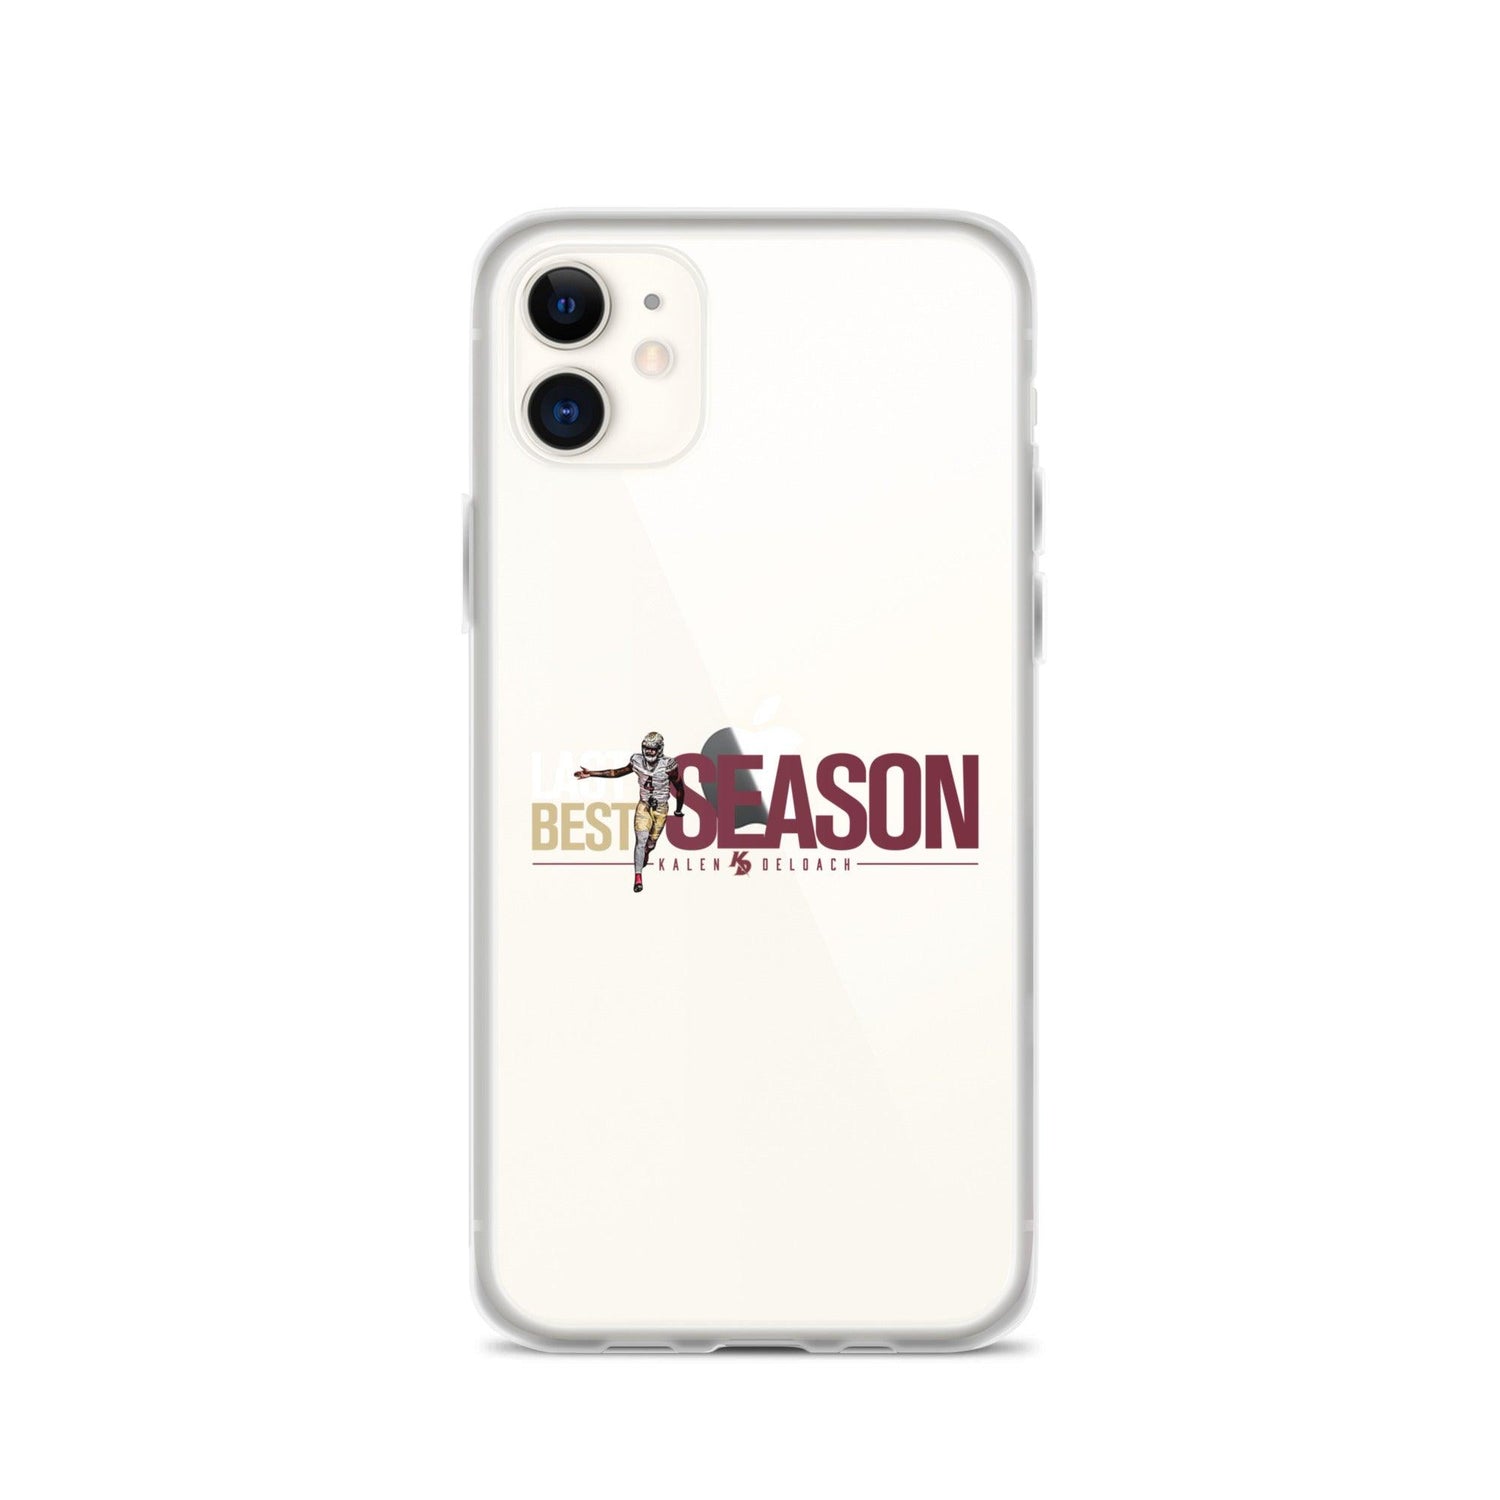 Kalen Deloach "Last Season Best Season" iPhone® - Fan Arch